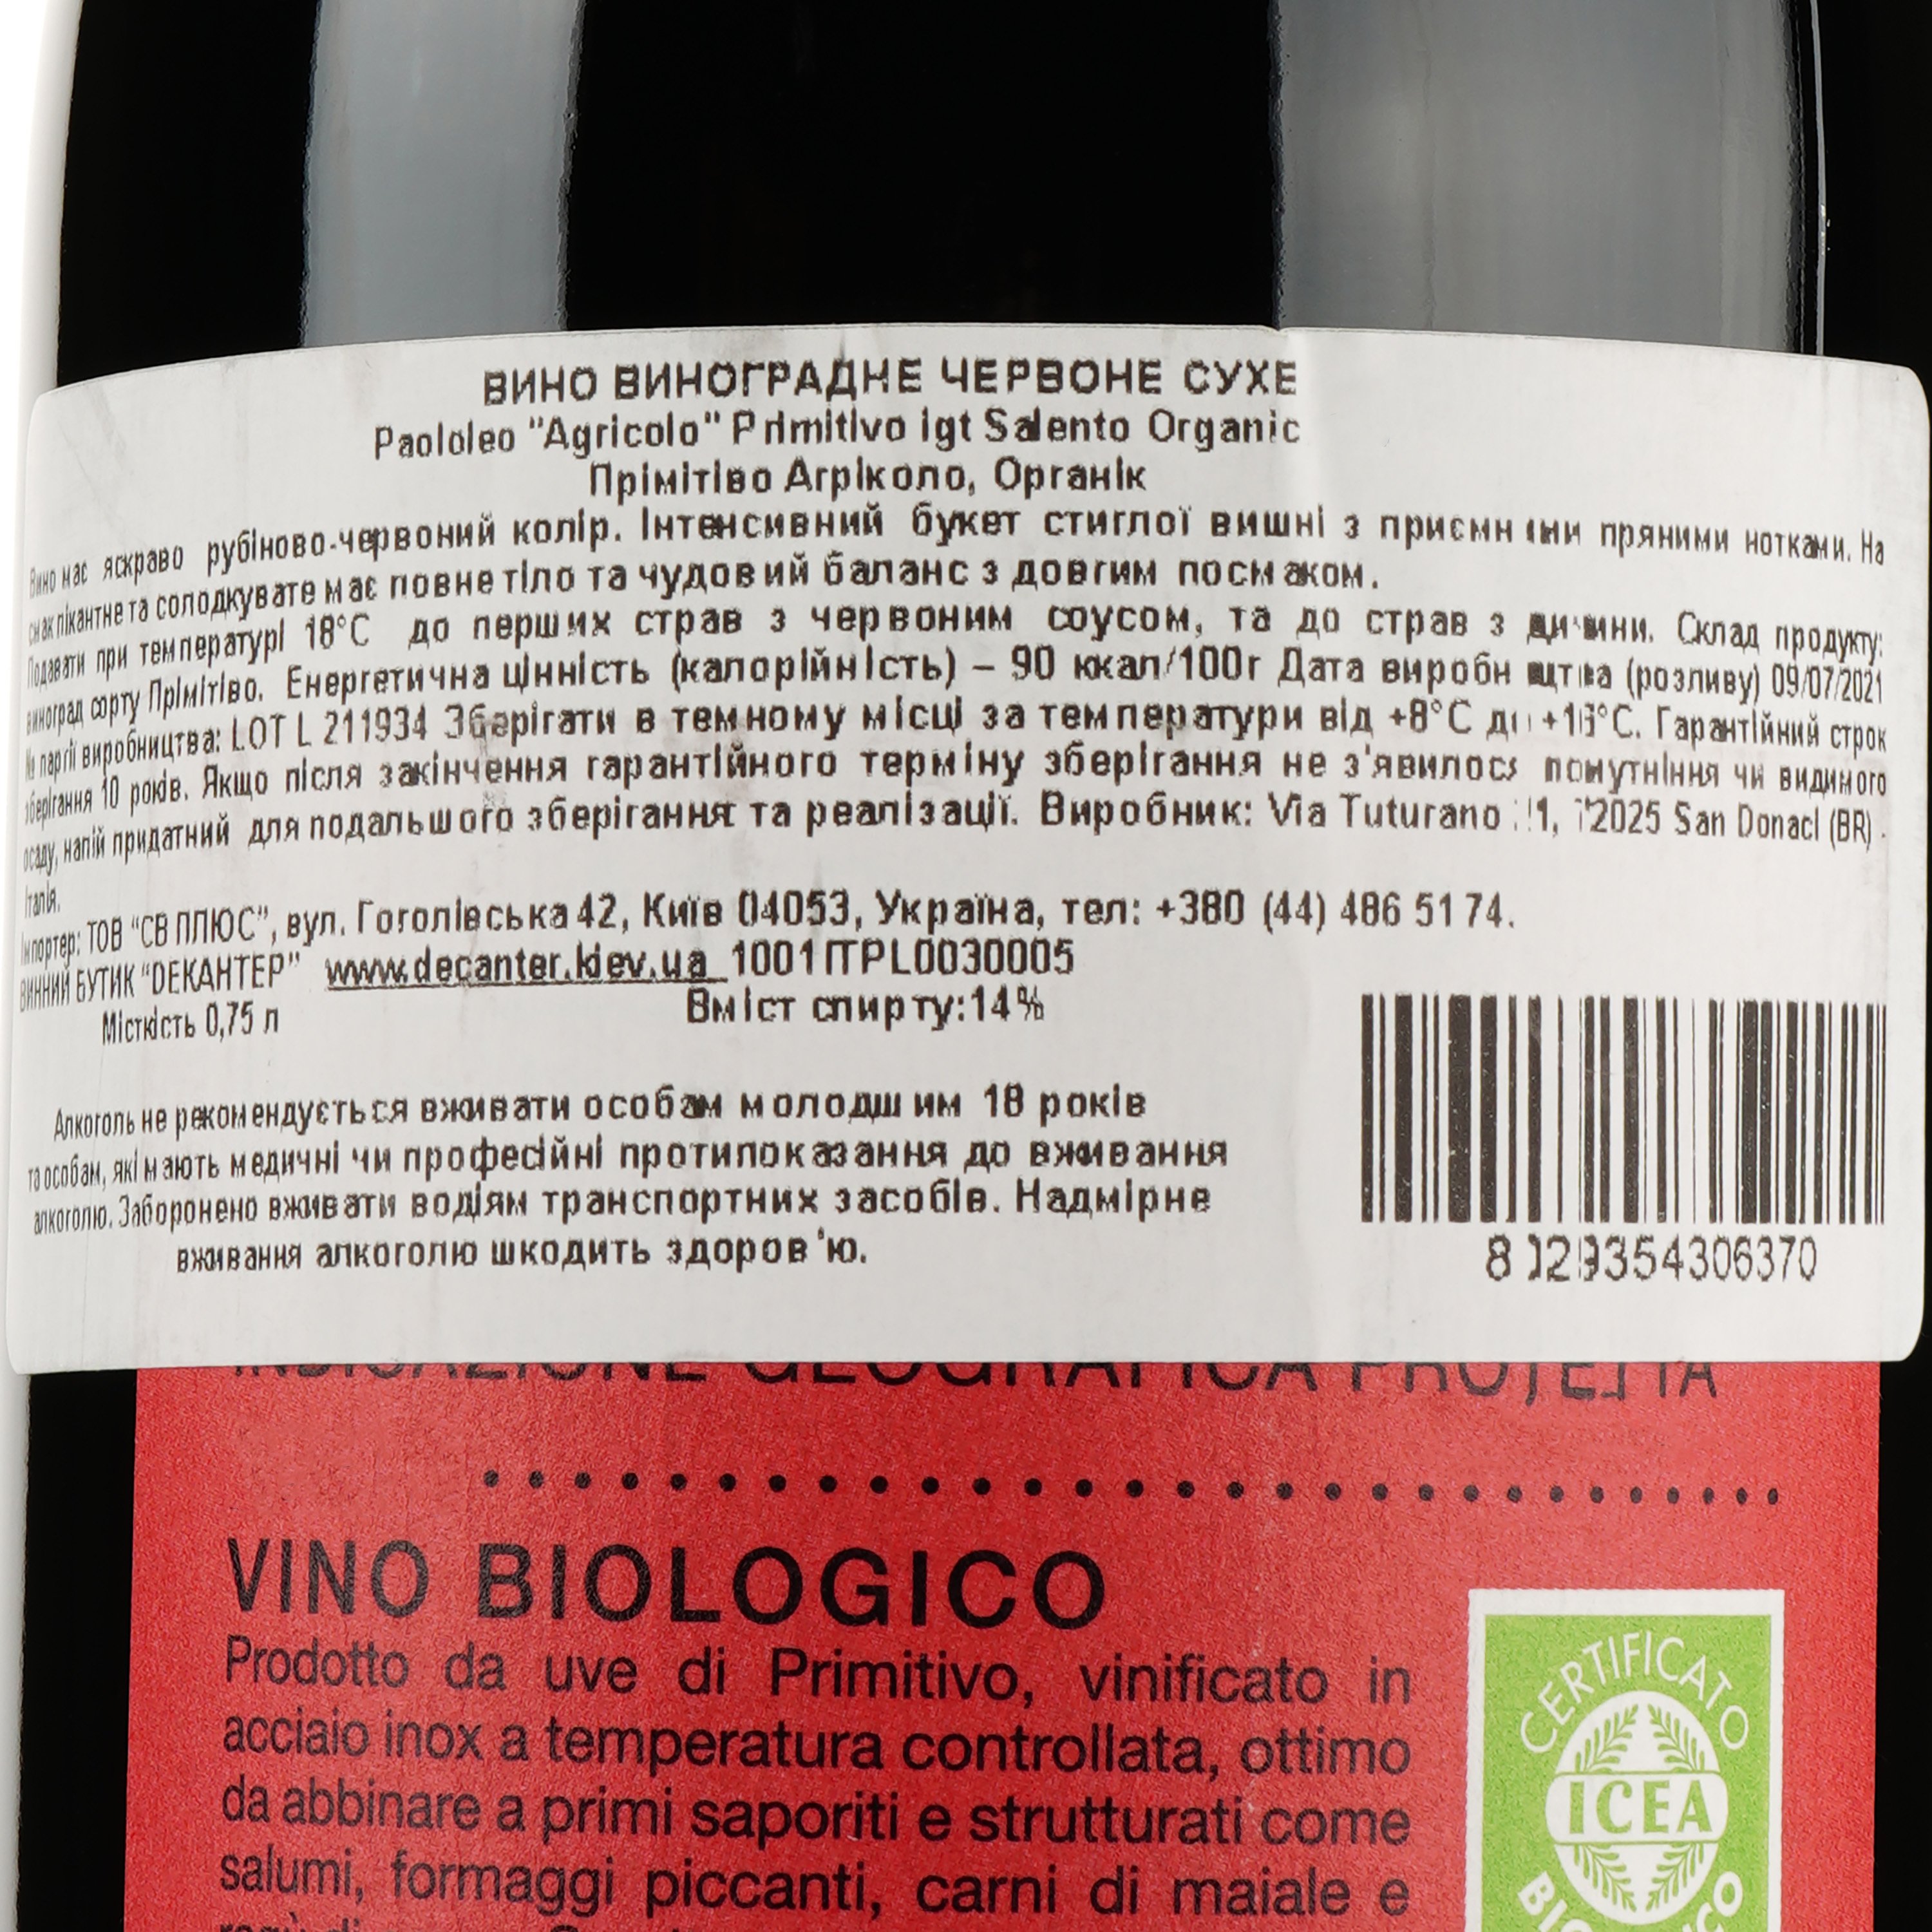 Вино Paololeo Agricolo Primitivo Salento Organic IGT, червоне, сухе, 0,75 л - фото 3